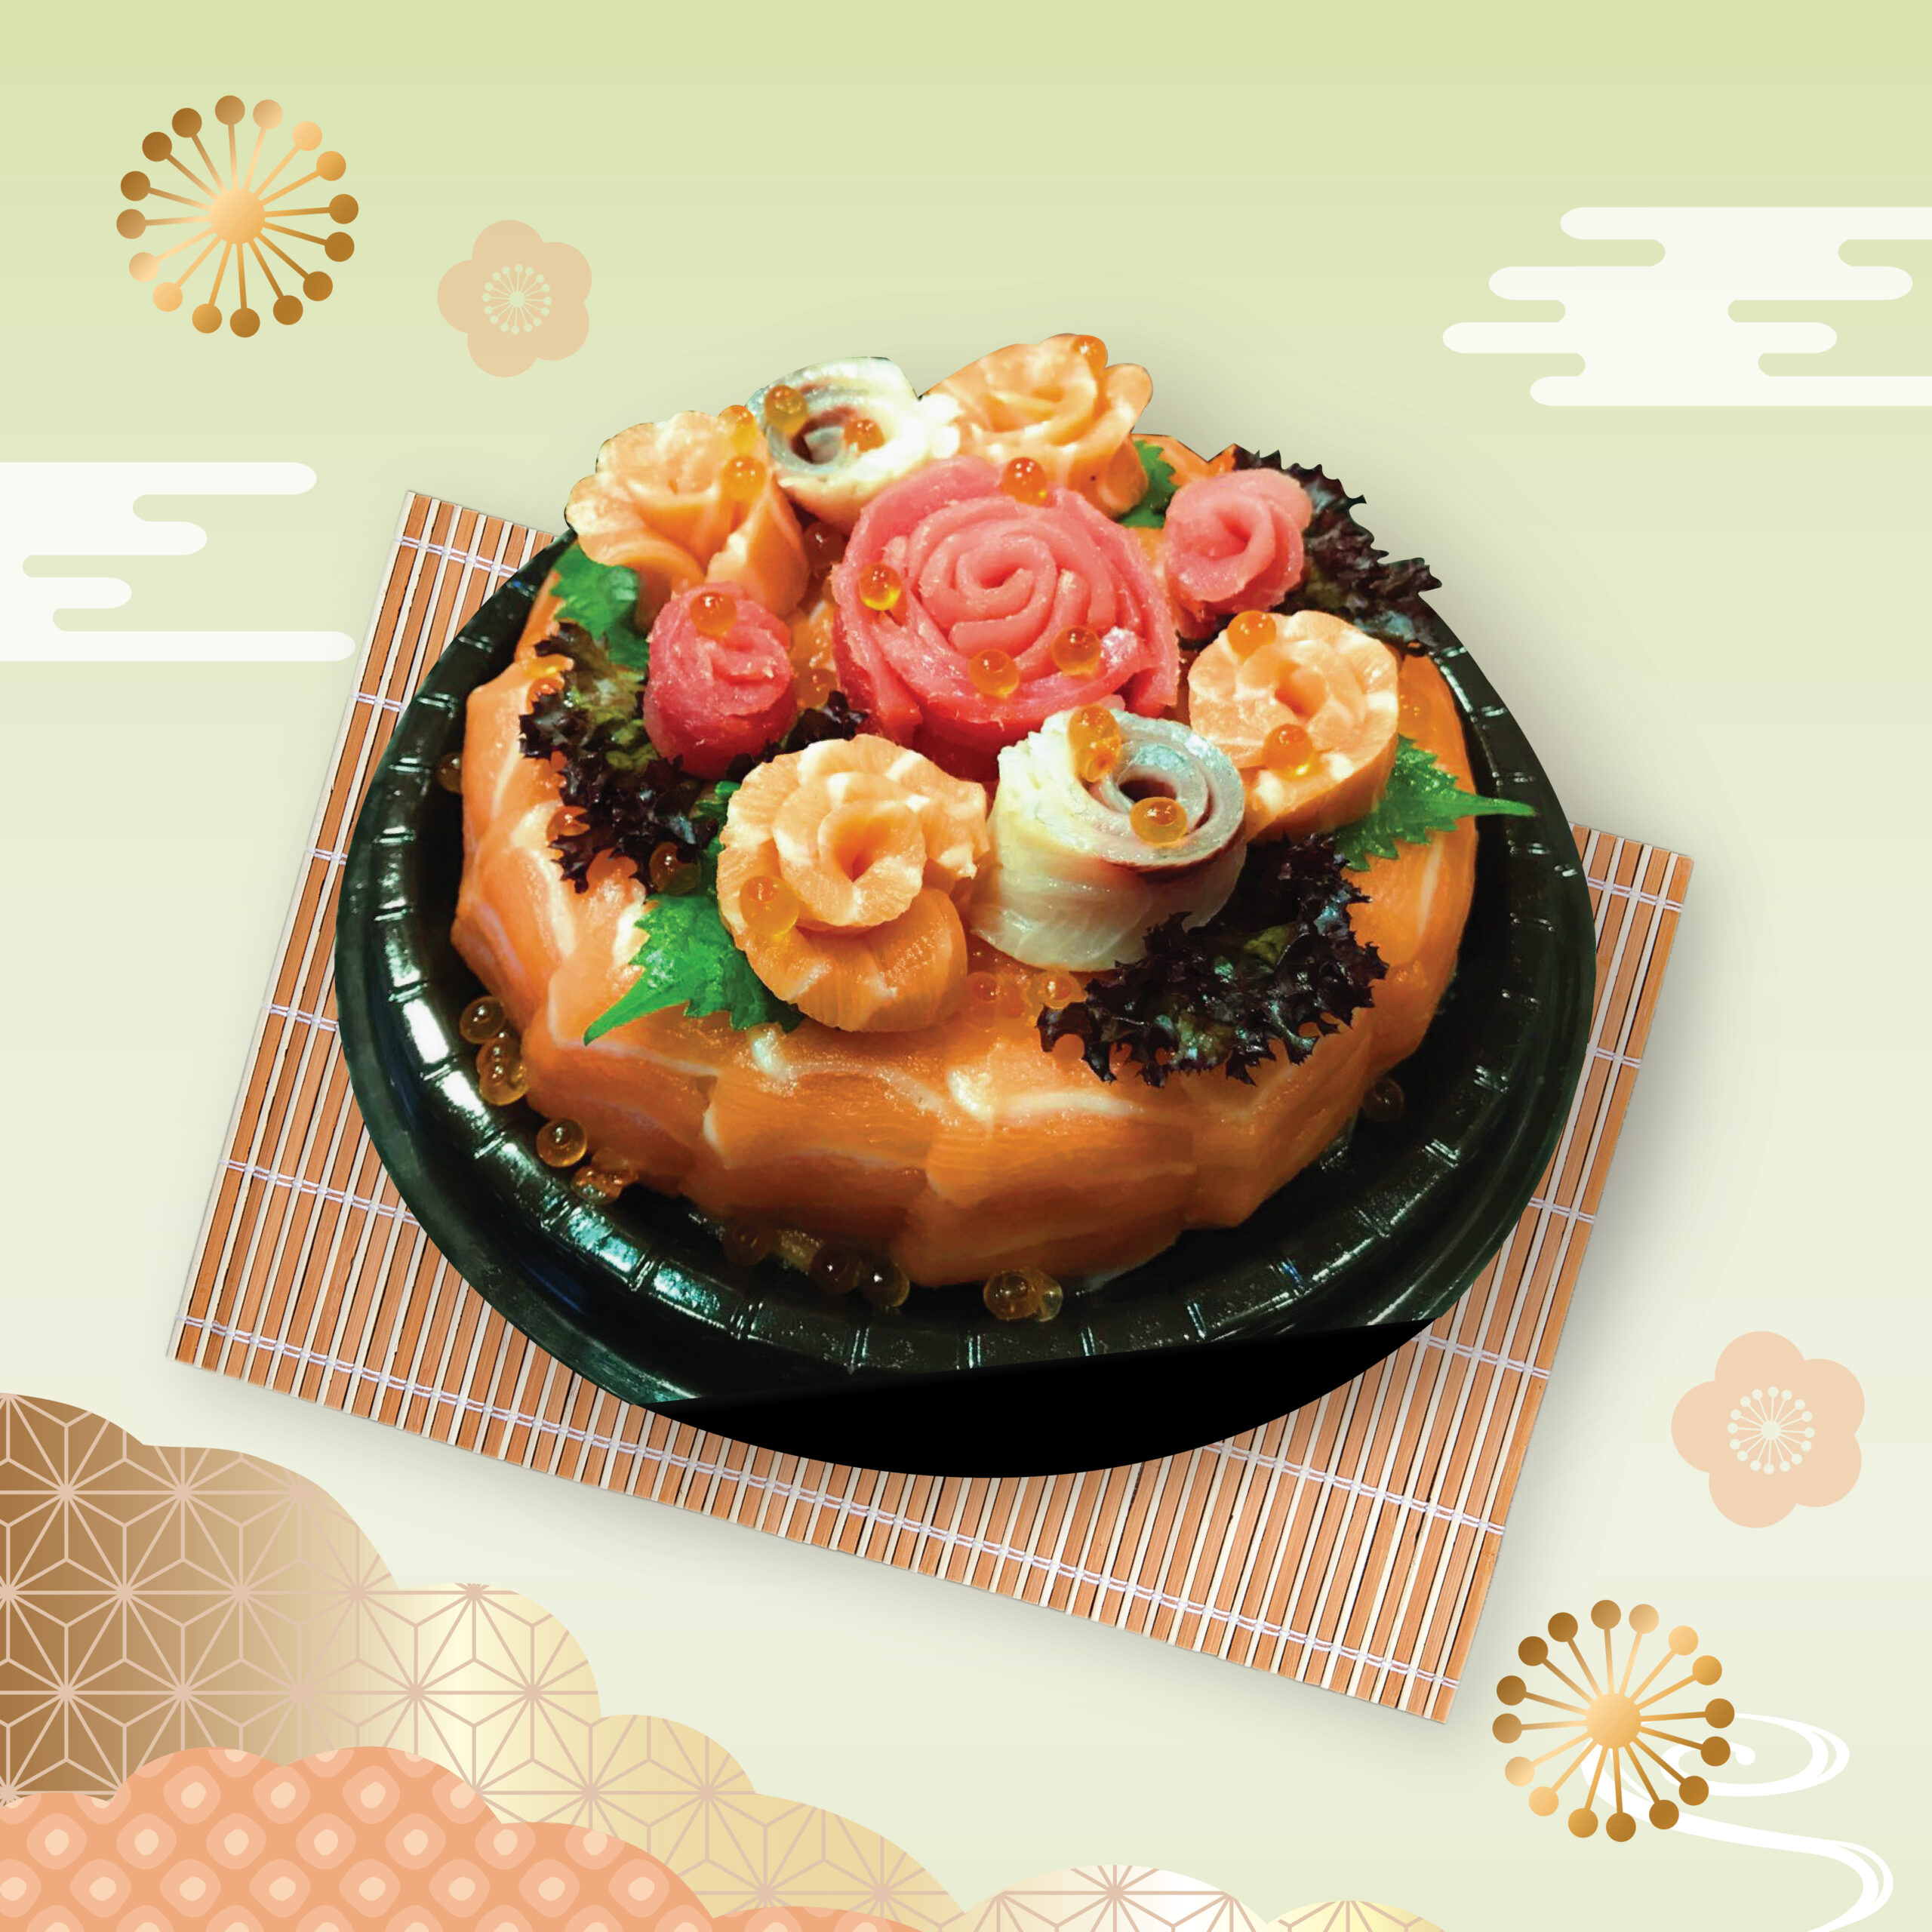 豪華的壽司蛋糕 | All About Japan